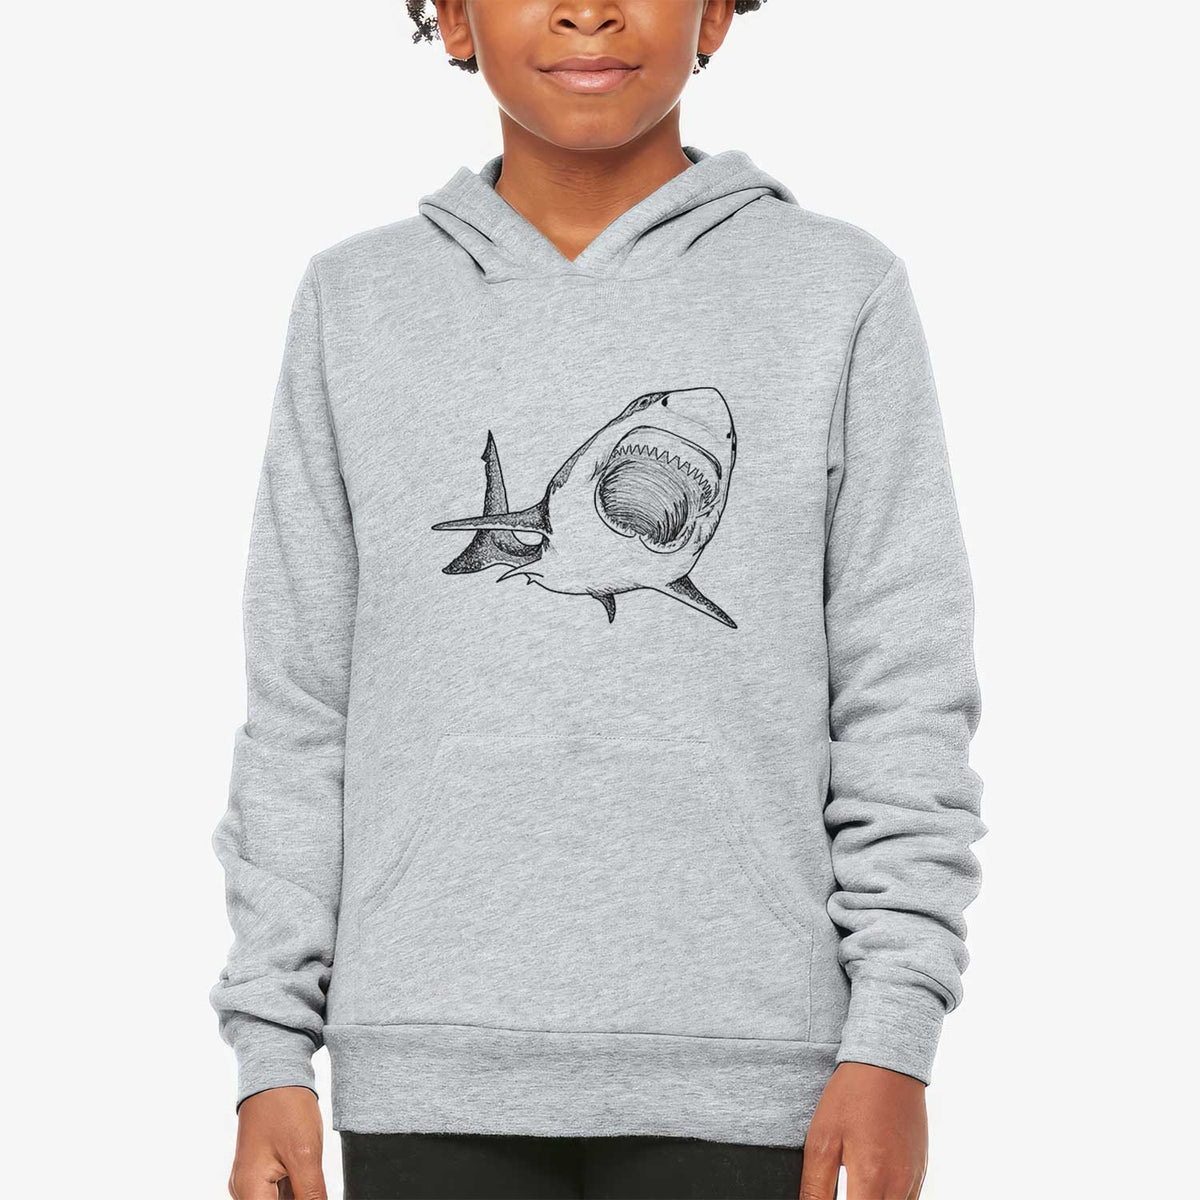 Great White Shark - Youth Hoodie Sweatshirt